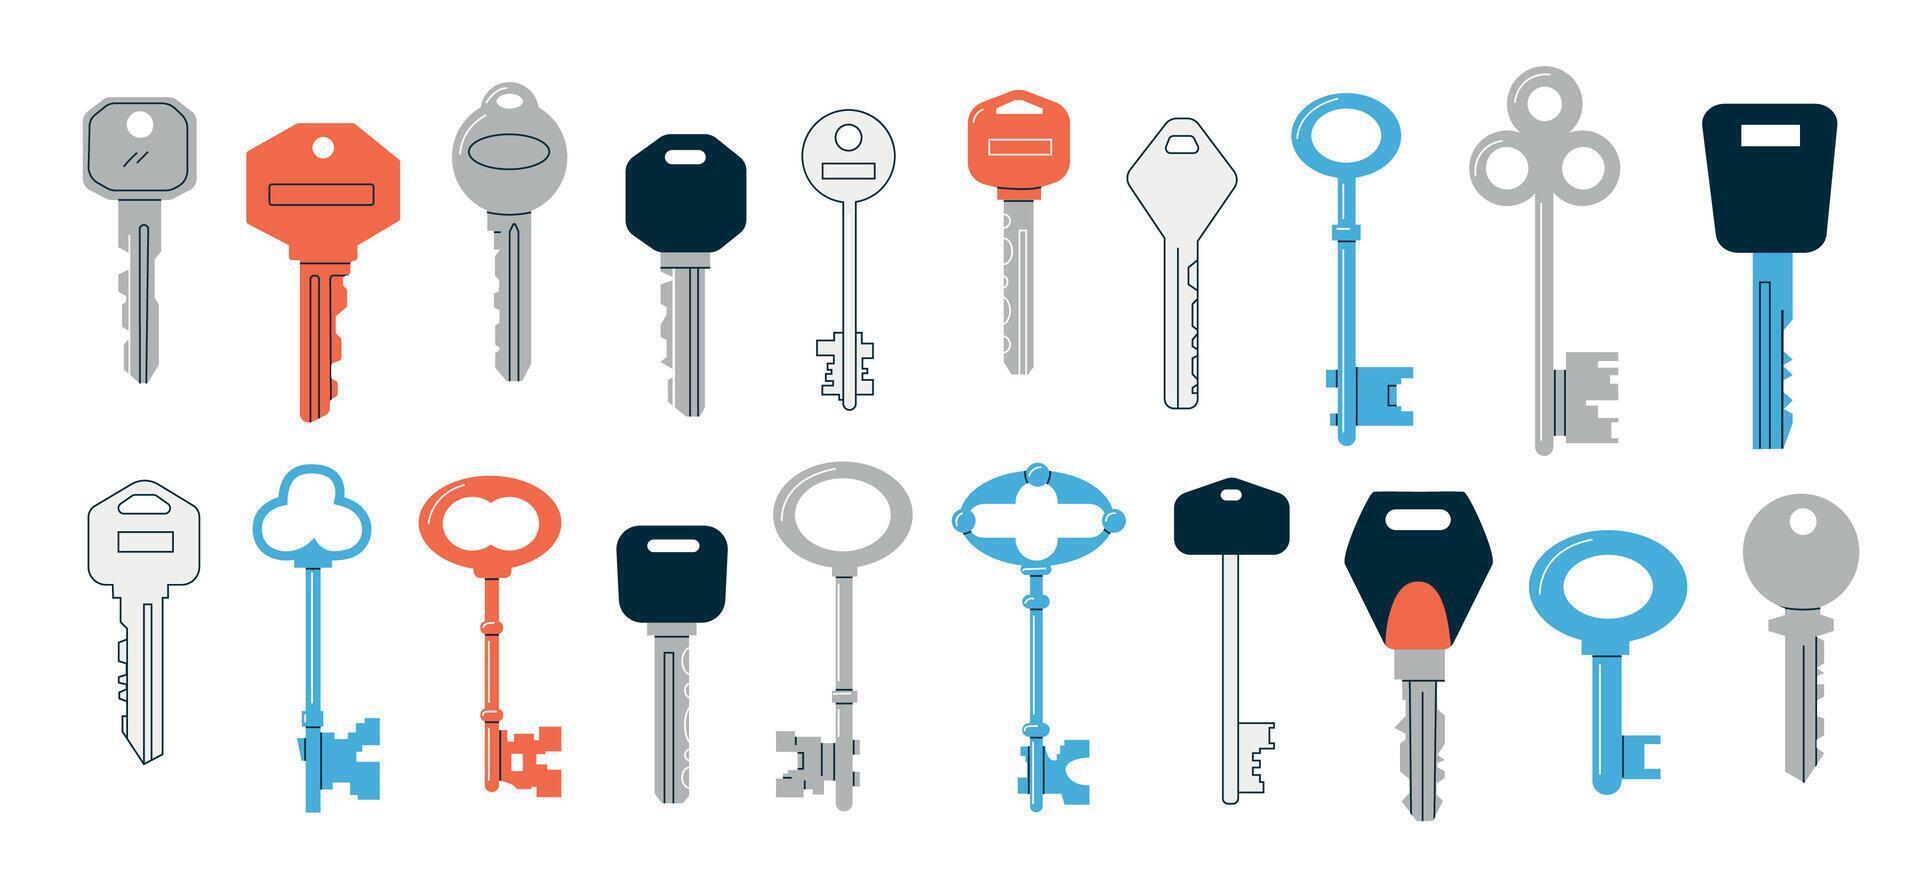 rabisco chaves. desenho animado abstrato vintage e moderno chaves do vários formas e cores, minimalista segurança e real Estado símbolo. vetor diferente chaves coleção